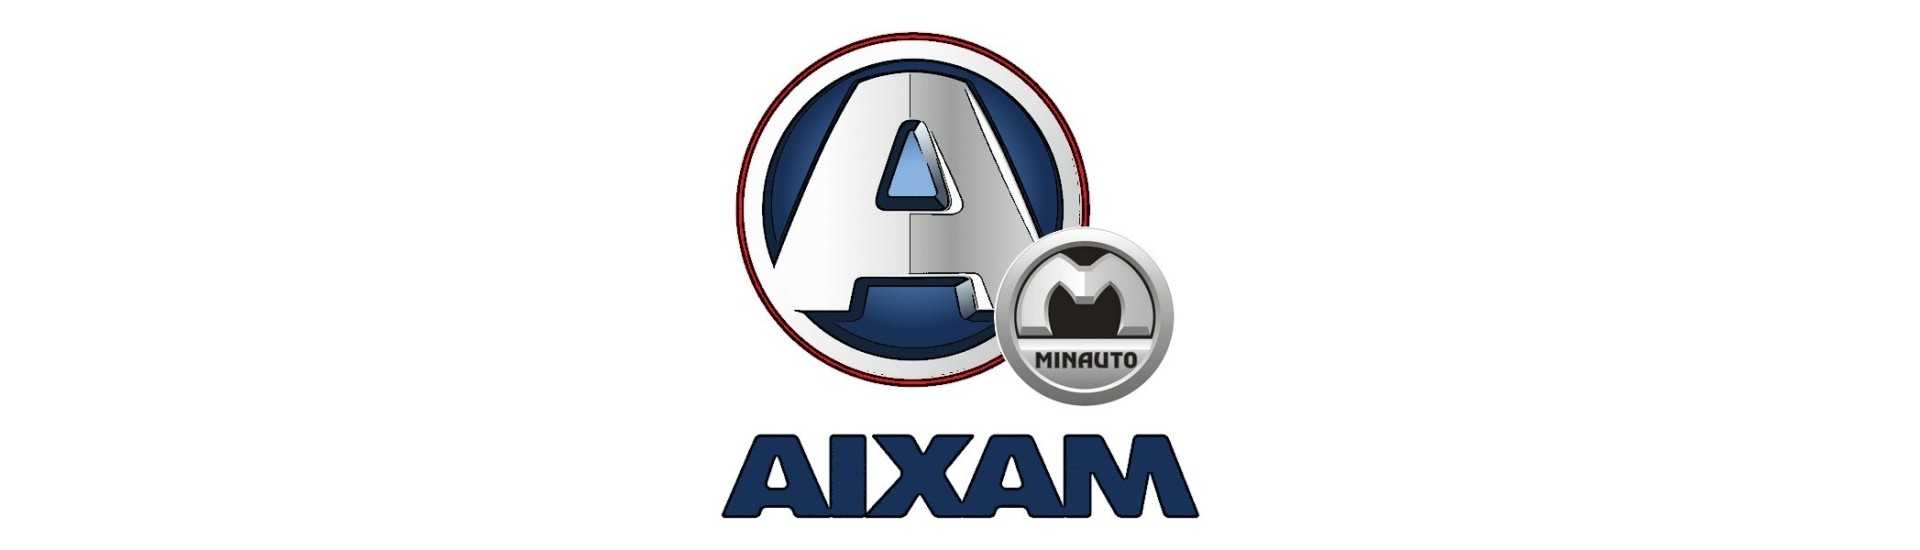 Parhaan auton hinnat ilman lupaa Aixam Minauto